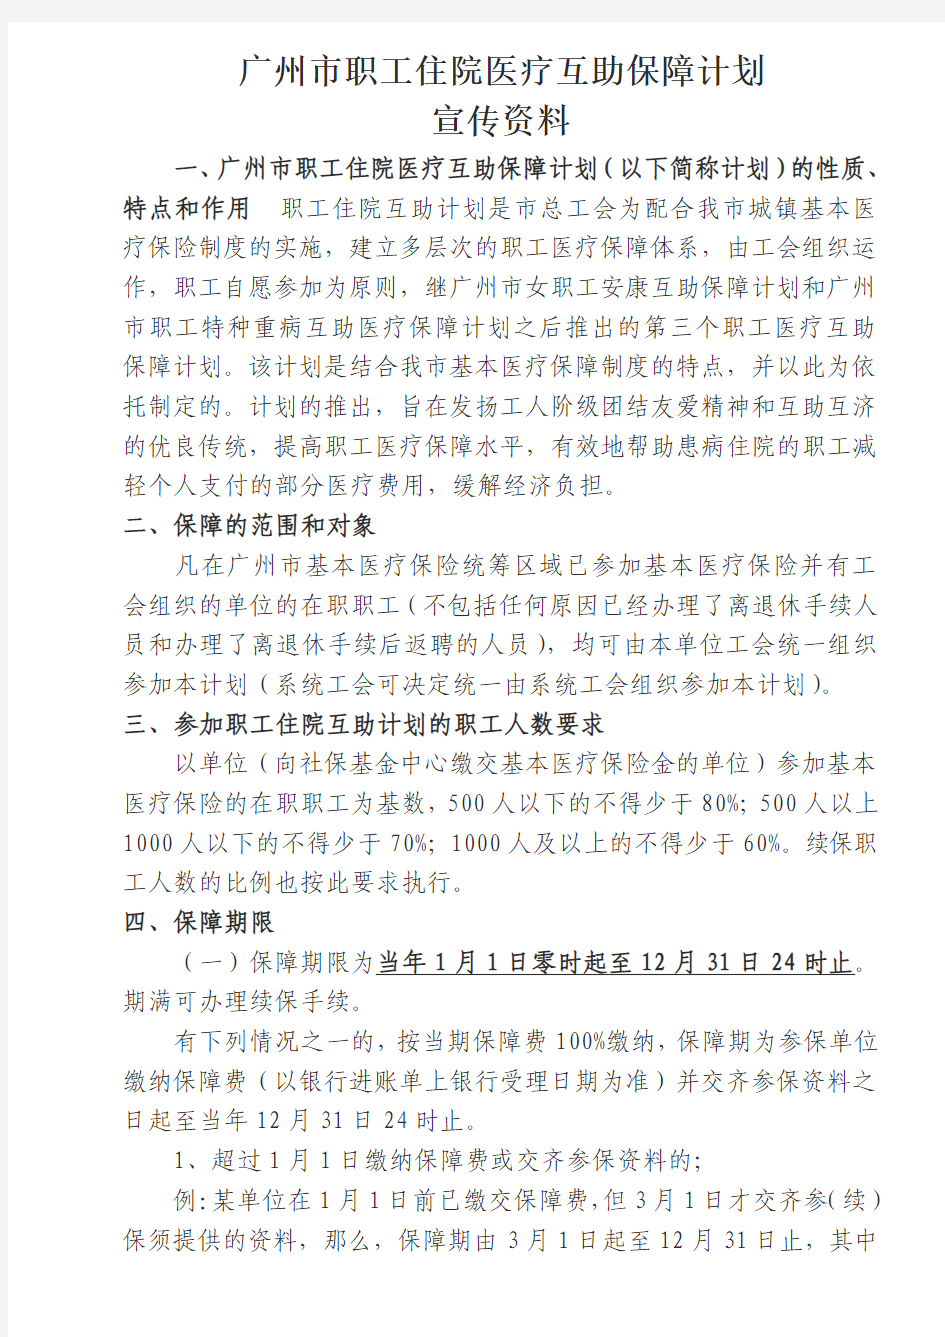 广州市职工住院医疗互助保障计划宣传资料